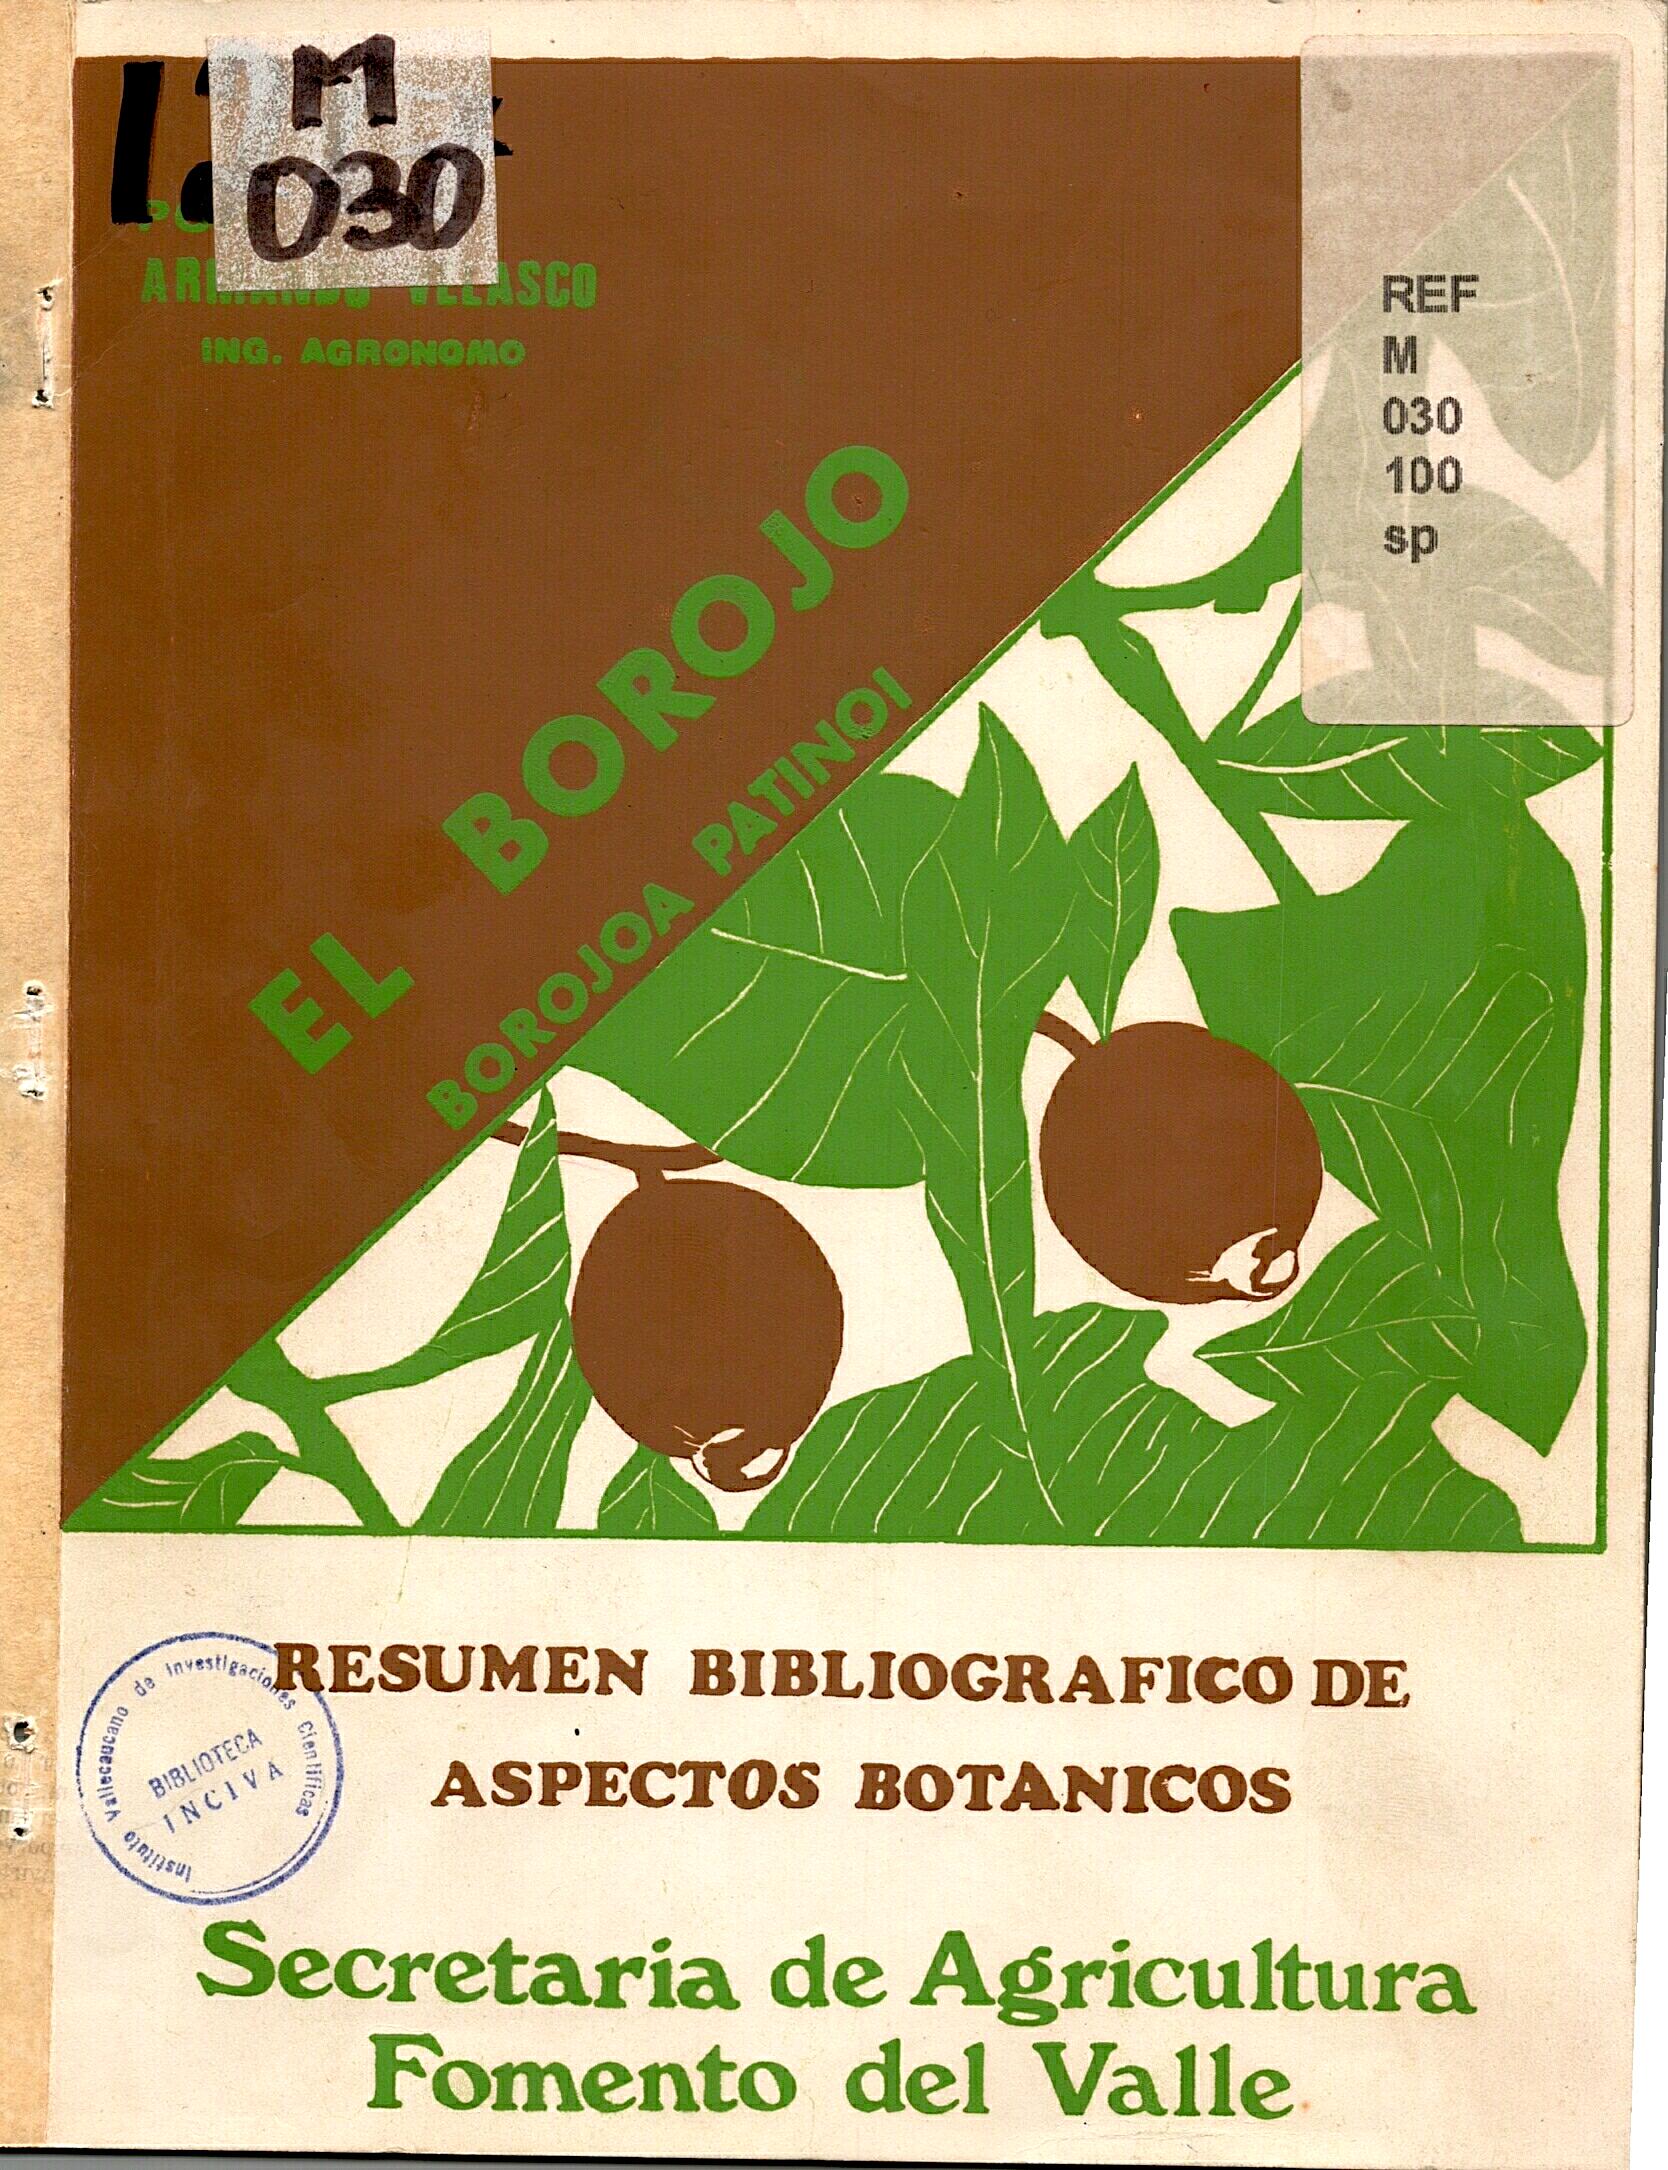 registros-bibliotecarios/el-borojo